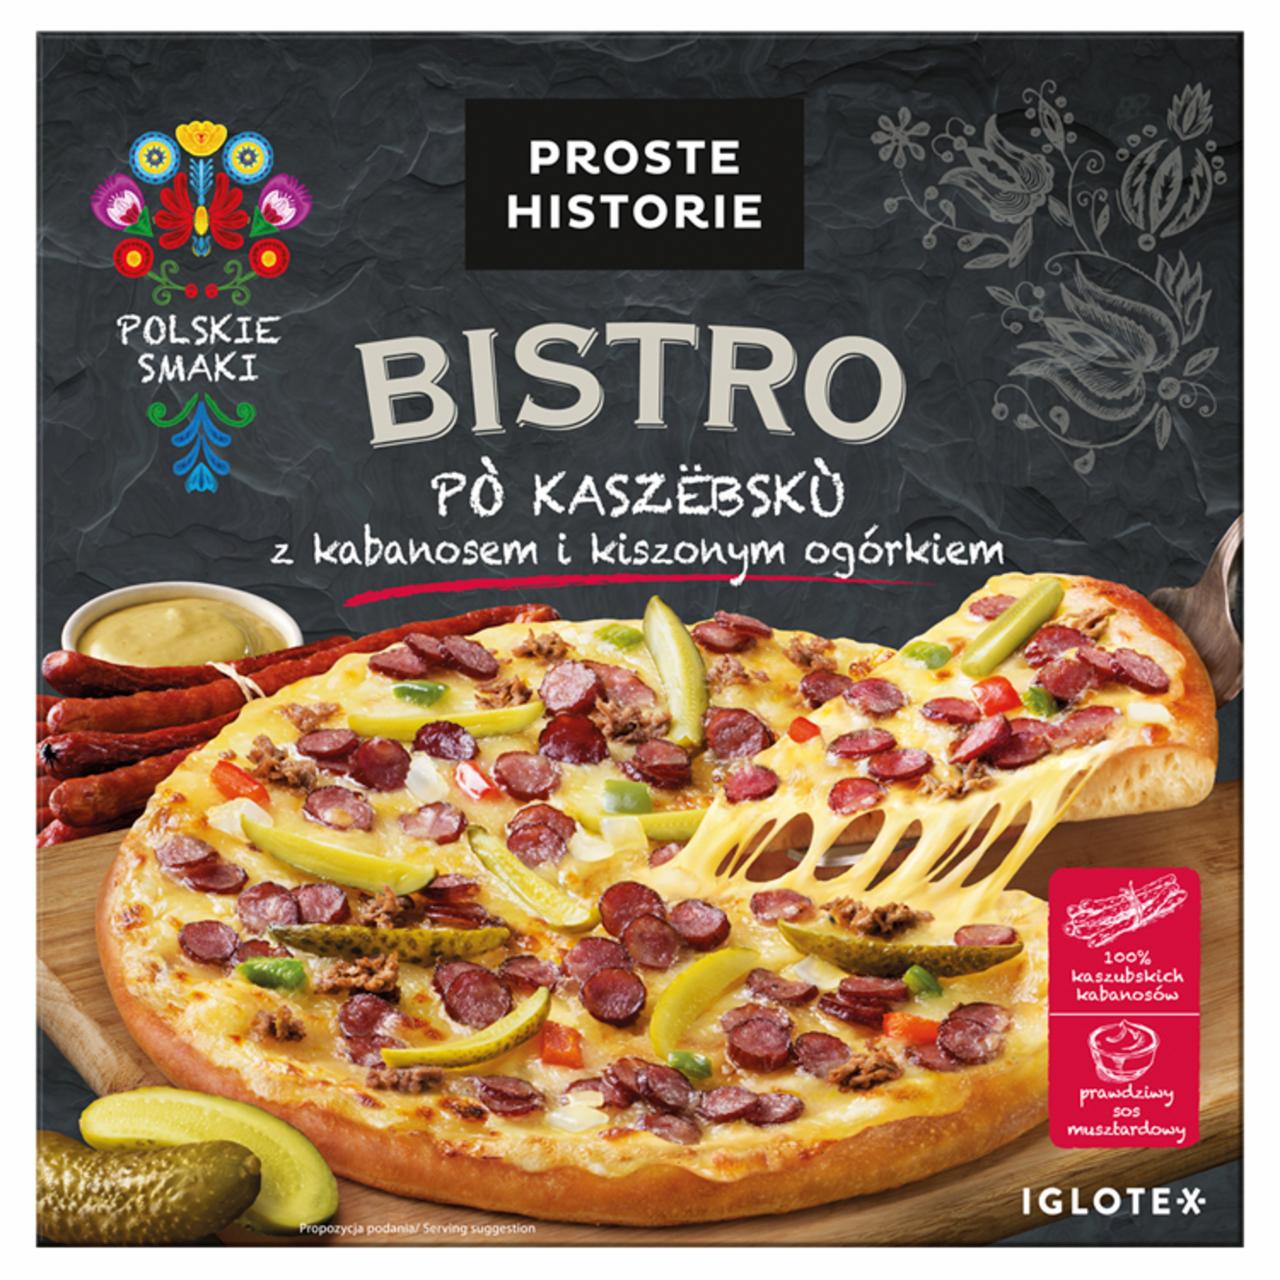 Zdjęcia - Bistro Pizza po kaszebsku z kabanosem i kiszonym ogórkiem Proste Historie